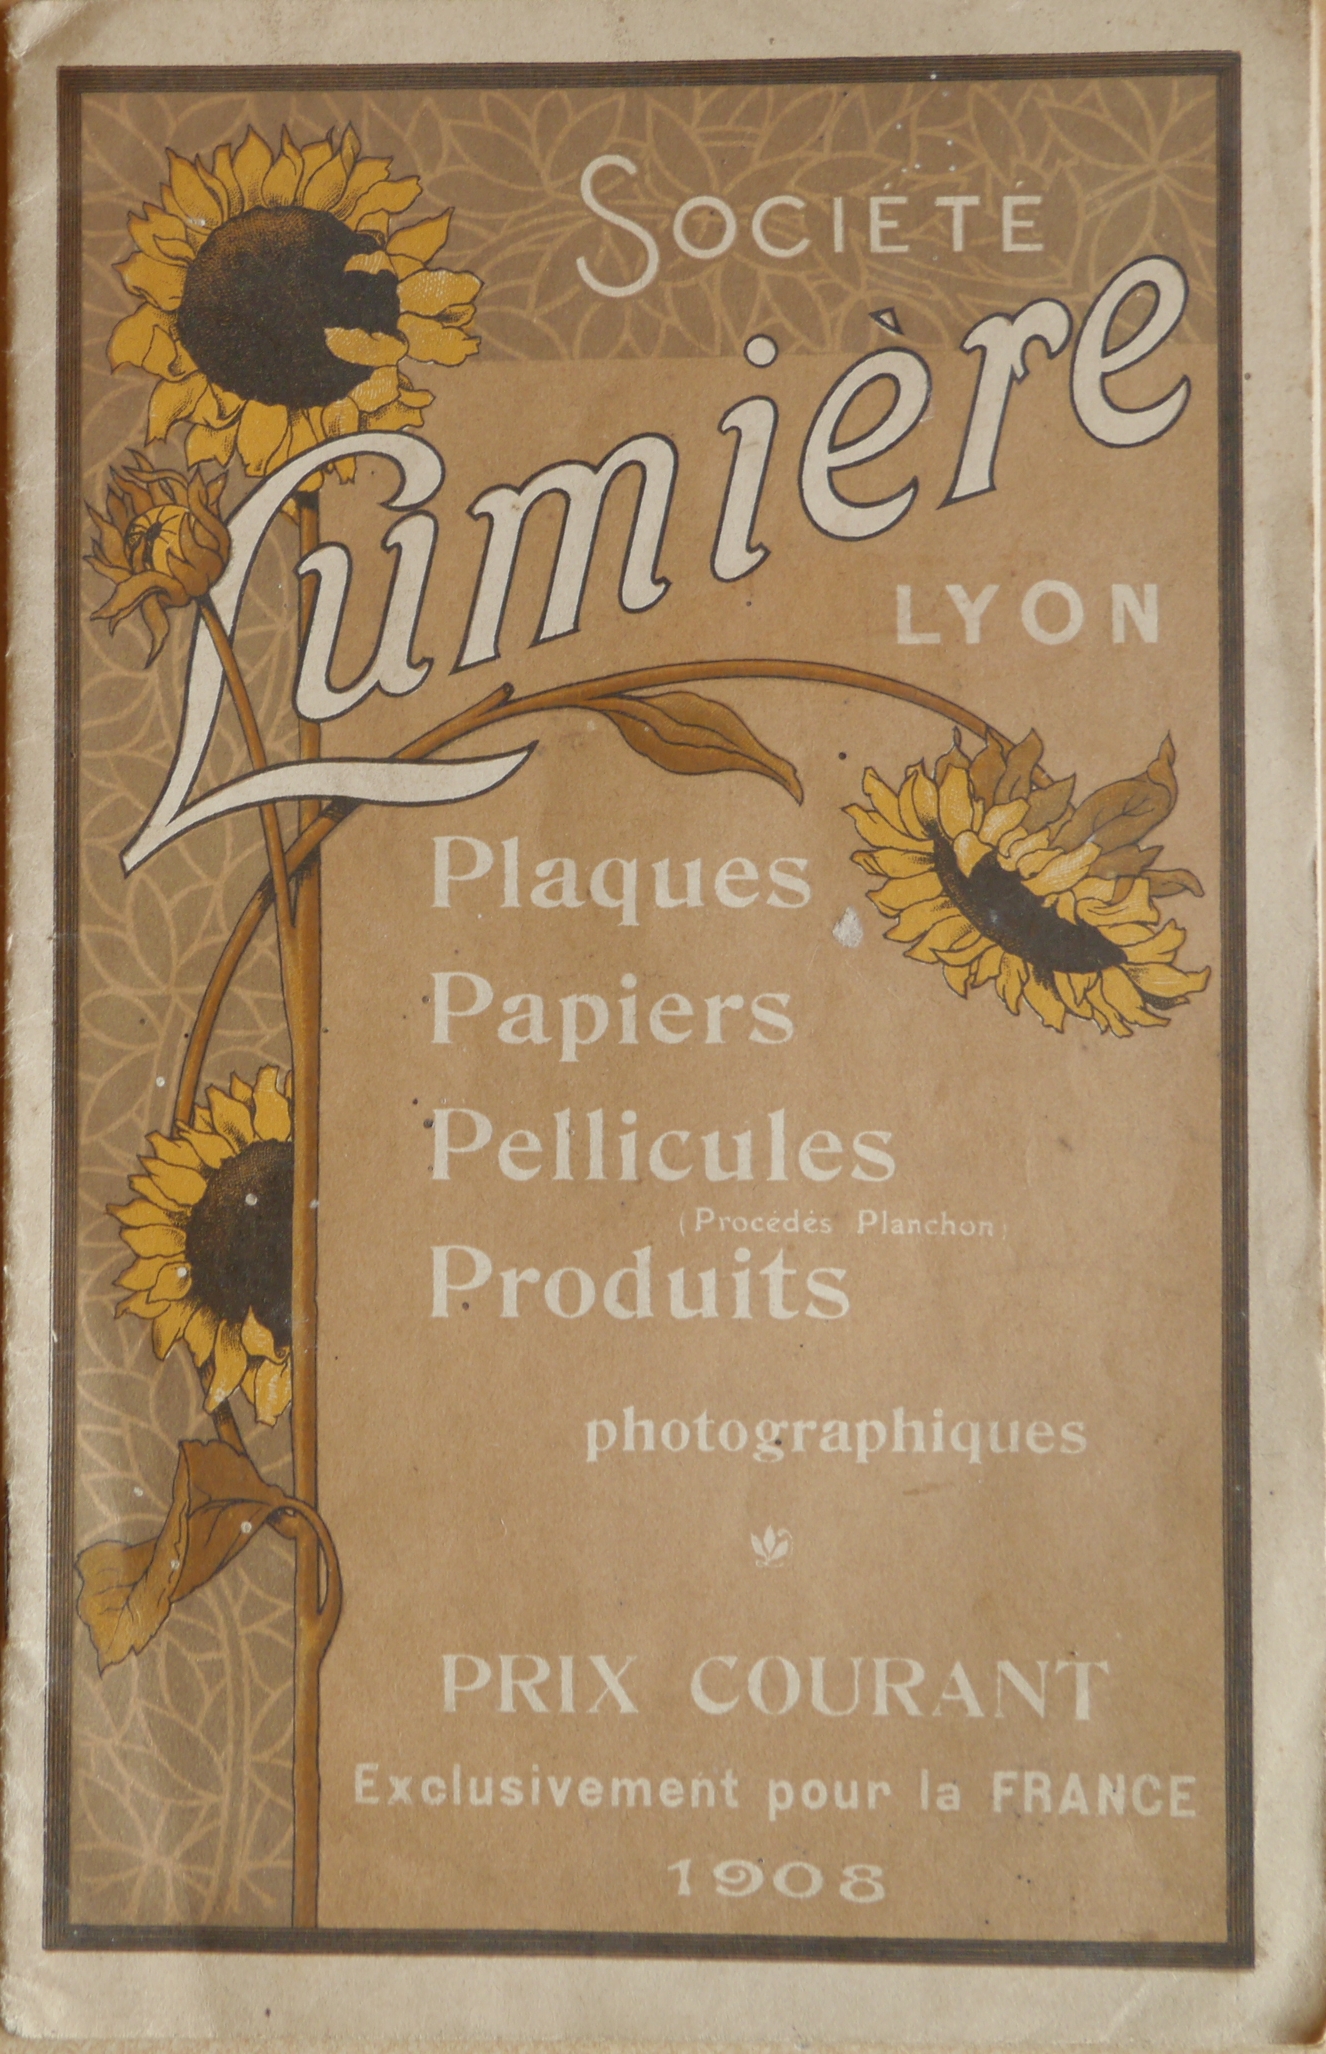 Prix courant Plaques Papiers Pellicules Produits - 1908